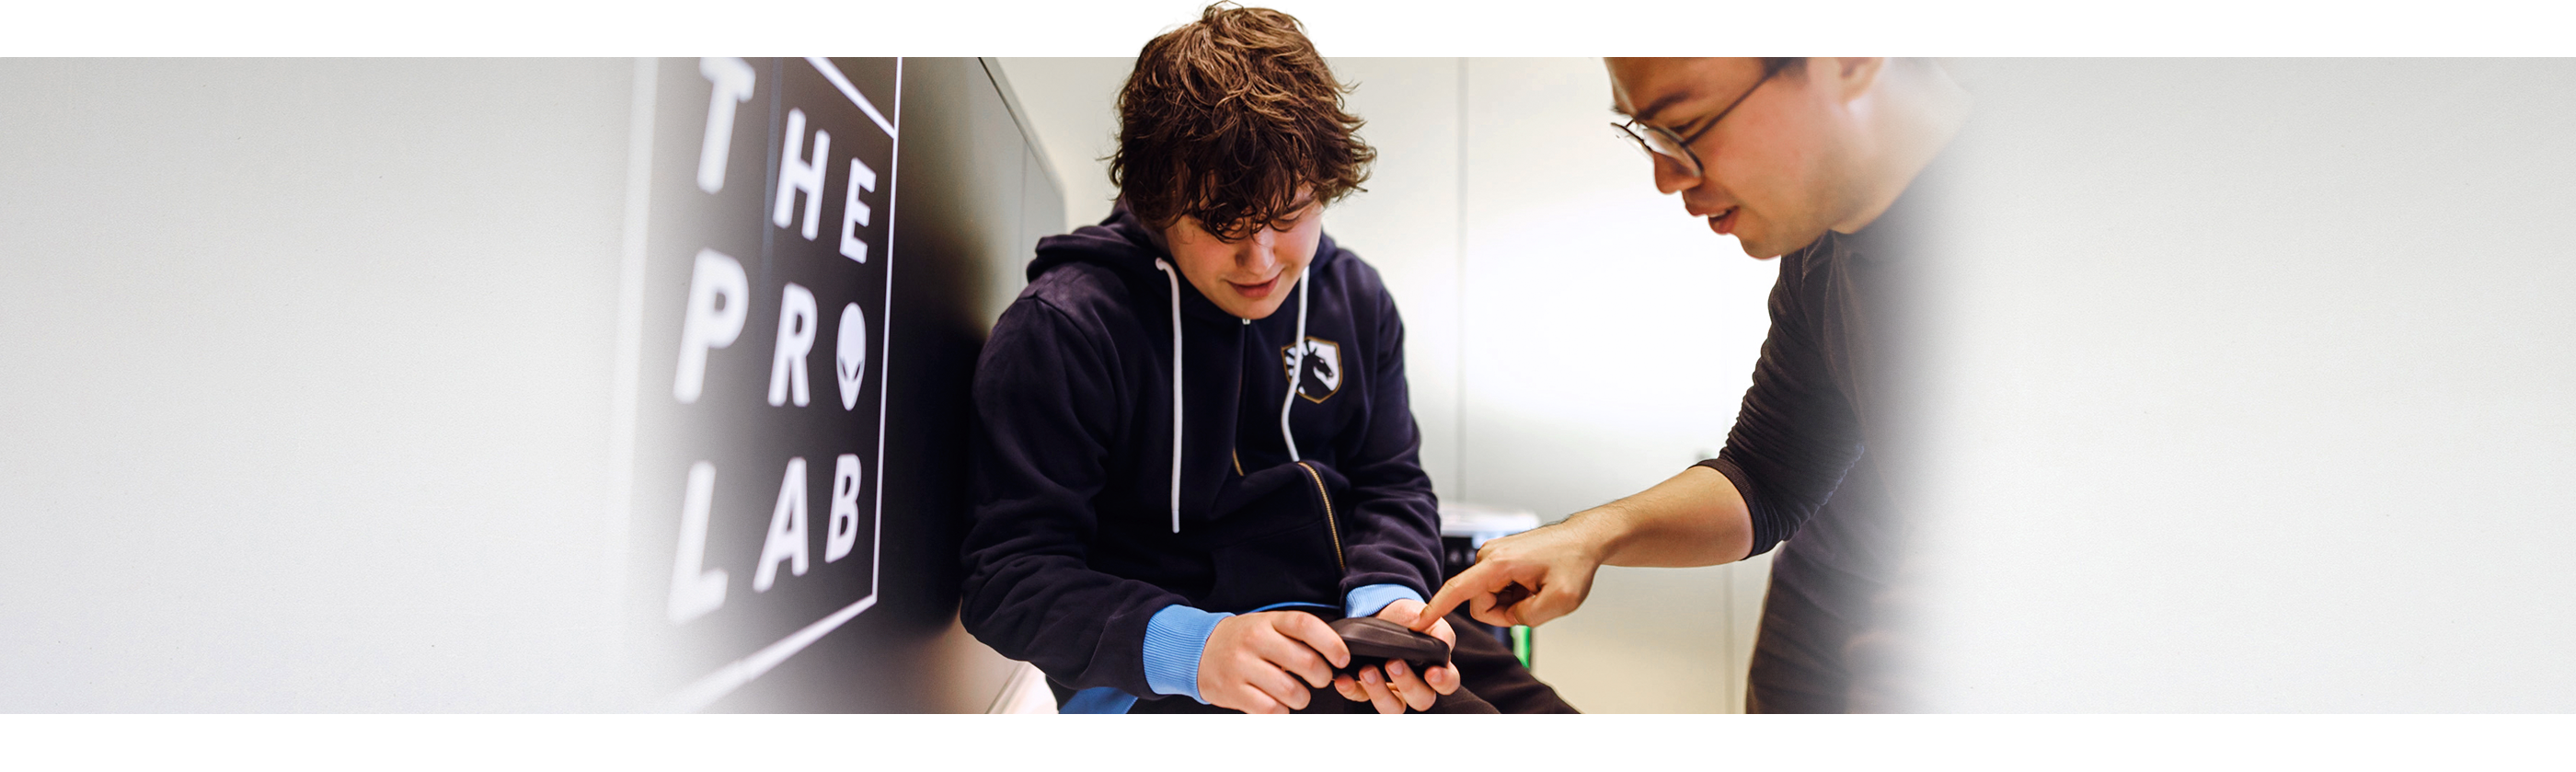 En dreng har en Dell Alienware Pro trådløs gamingmus i hånden, og en mand ved siden af ham peger på produktet.